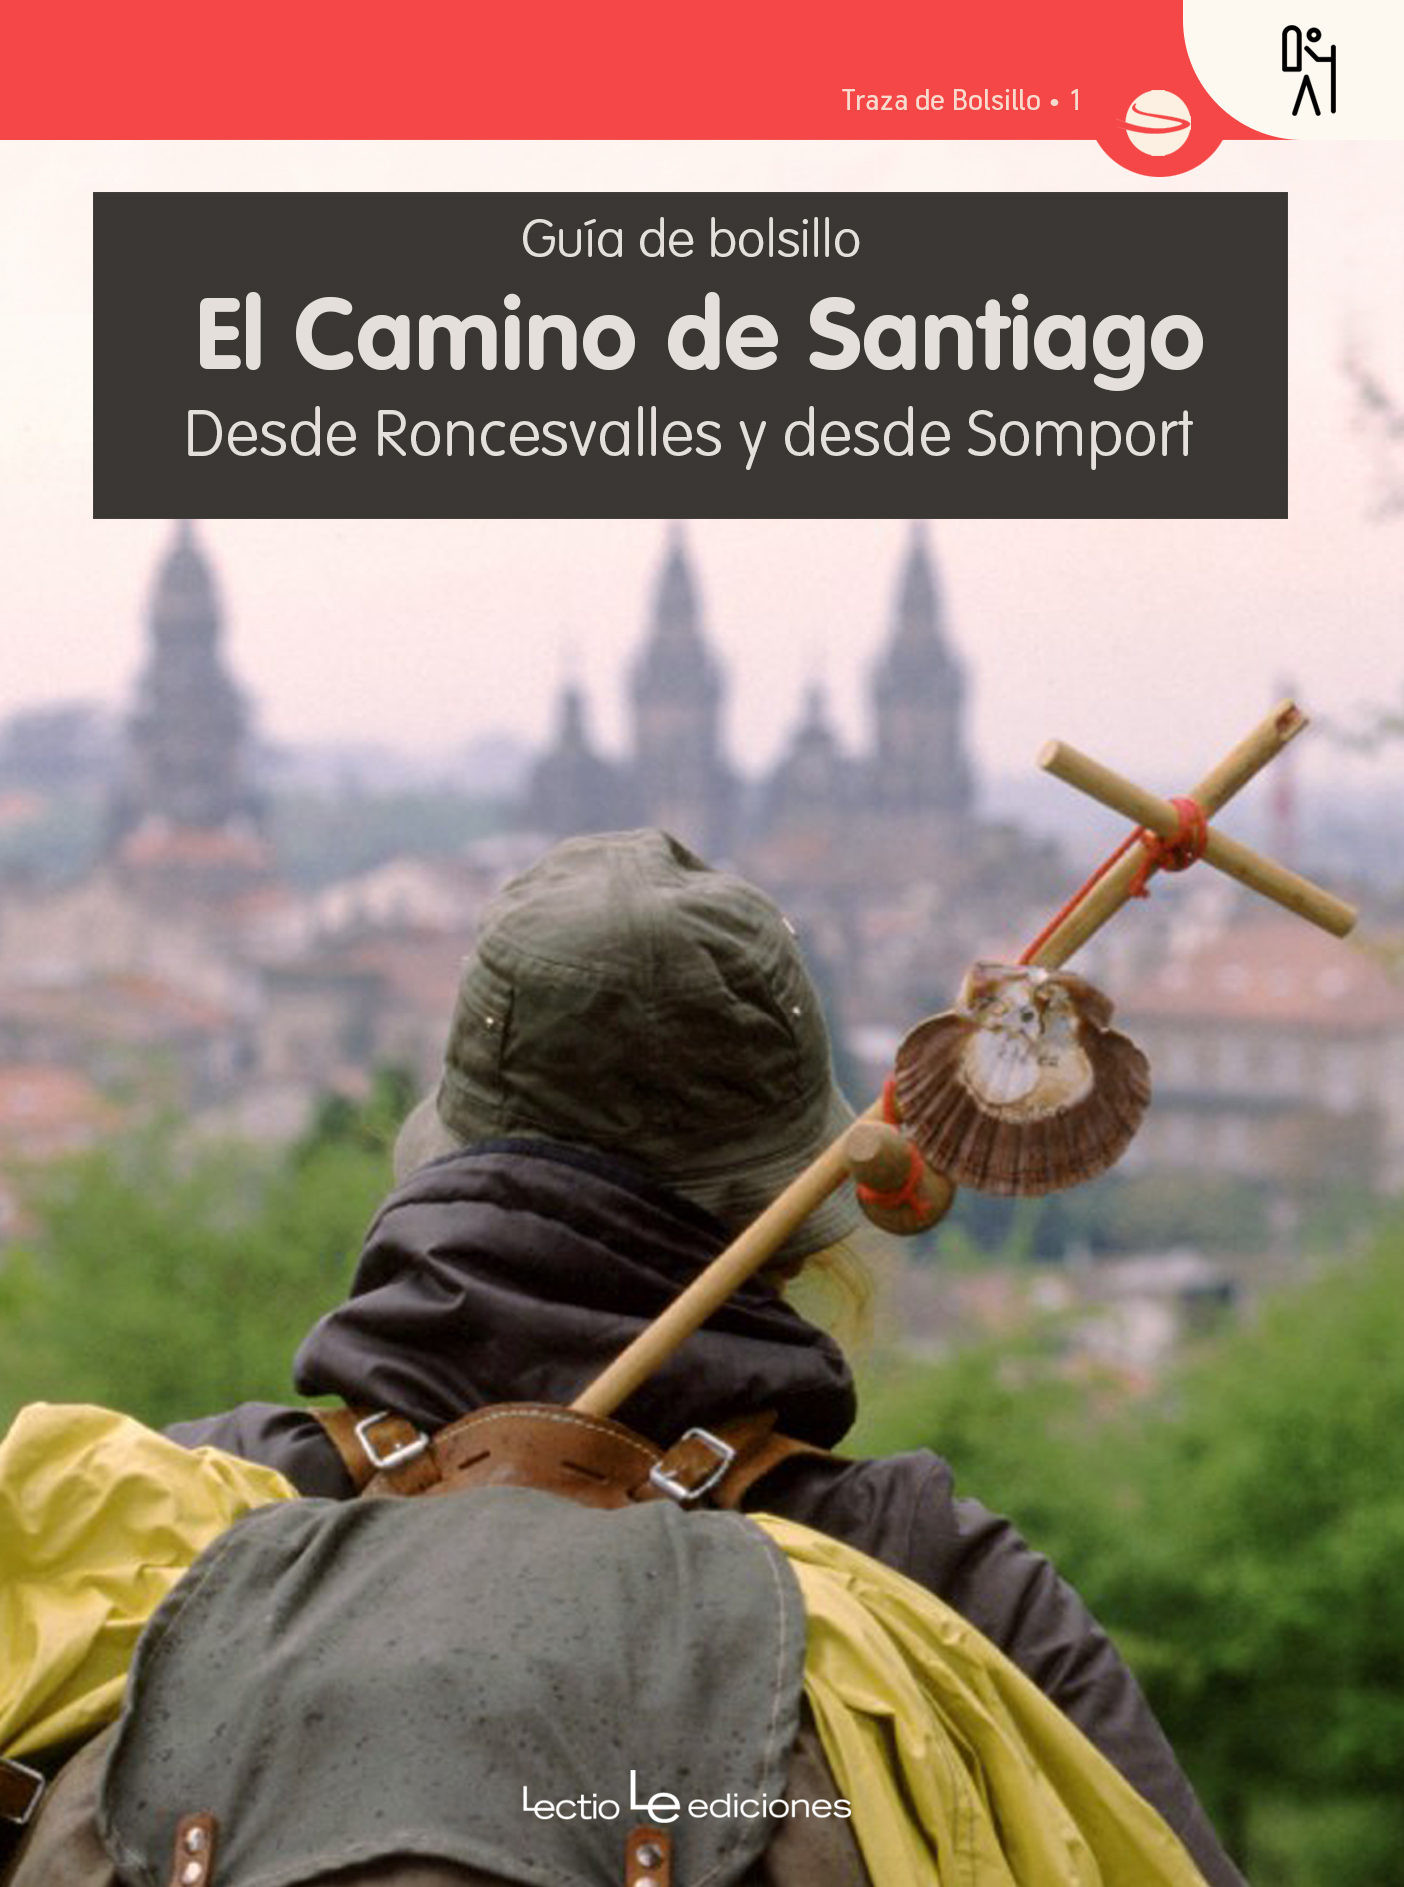 Imagen El camino de Santiago. Desde Roncesvalles y desde Somport. Guía de bolsillo